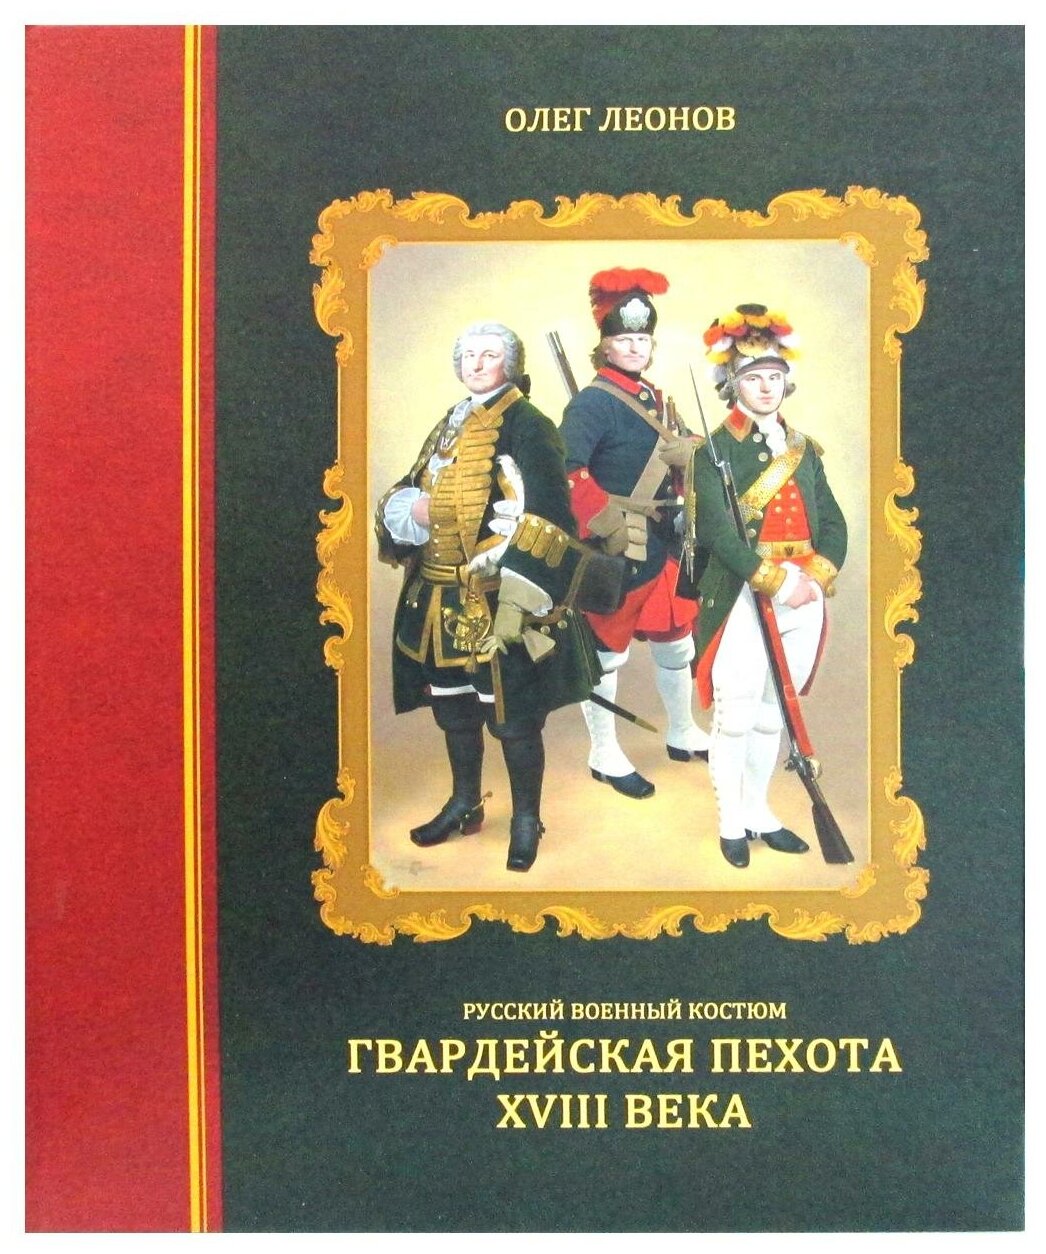 Русский военный костюм. Гвардейская пехота XVIII века - фото №1